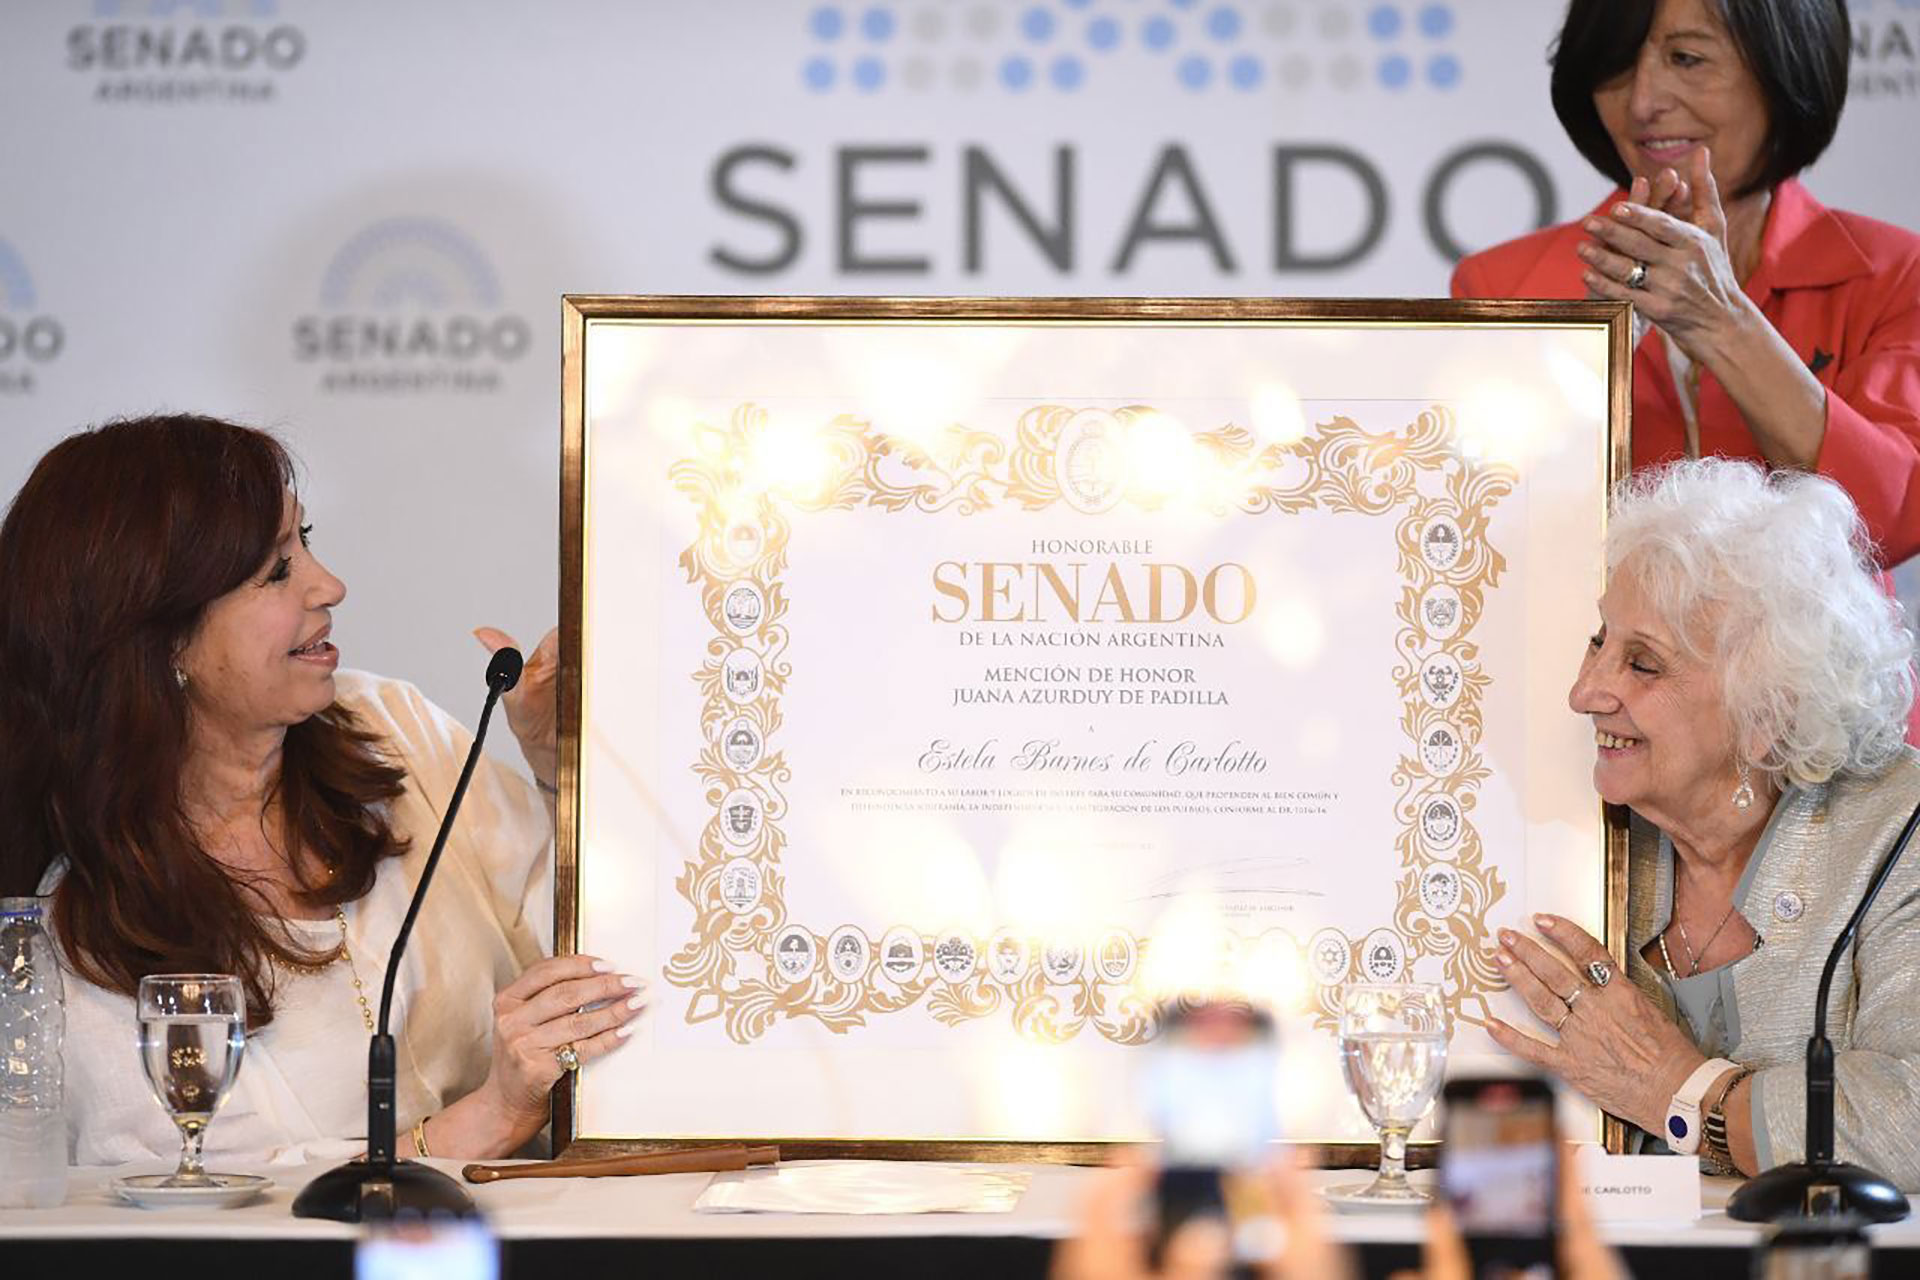 La vicepresidenta Cristina Kirchner le entregó la mención de honor "Juana Azurduy" a Estela de Carlotto en el Senado